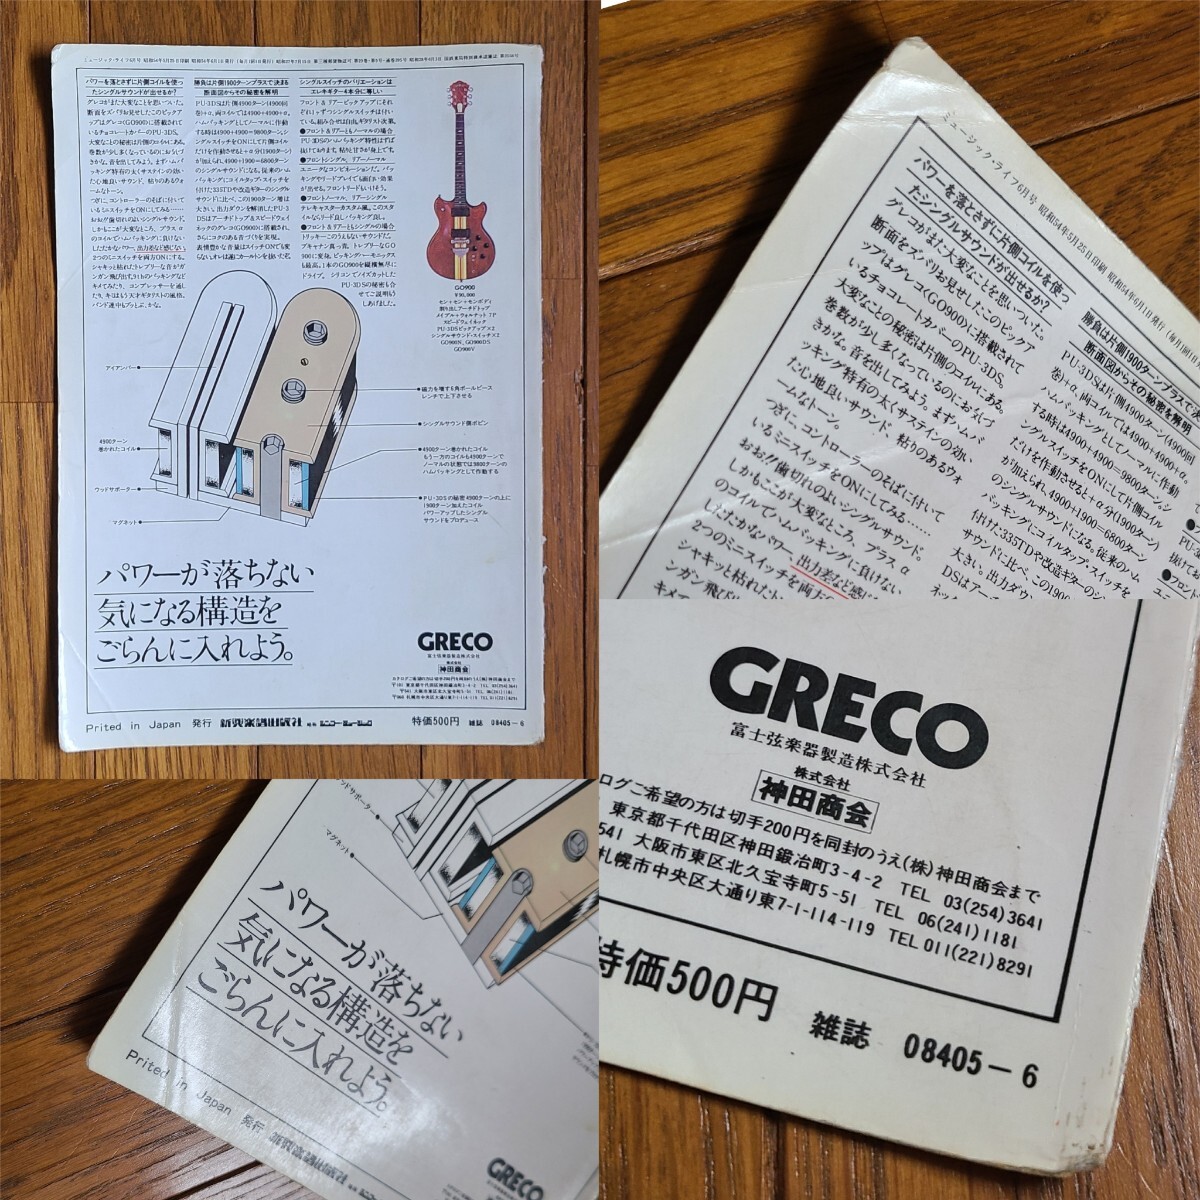 GRECO グレコ ギター広告 1978年 1979年 【切り抜き】GRECO GO GOⅡ GOⅢ モデル※雑誌裏表紙/傷みあり (裏面 日本ギブソン)_画像4